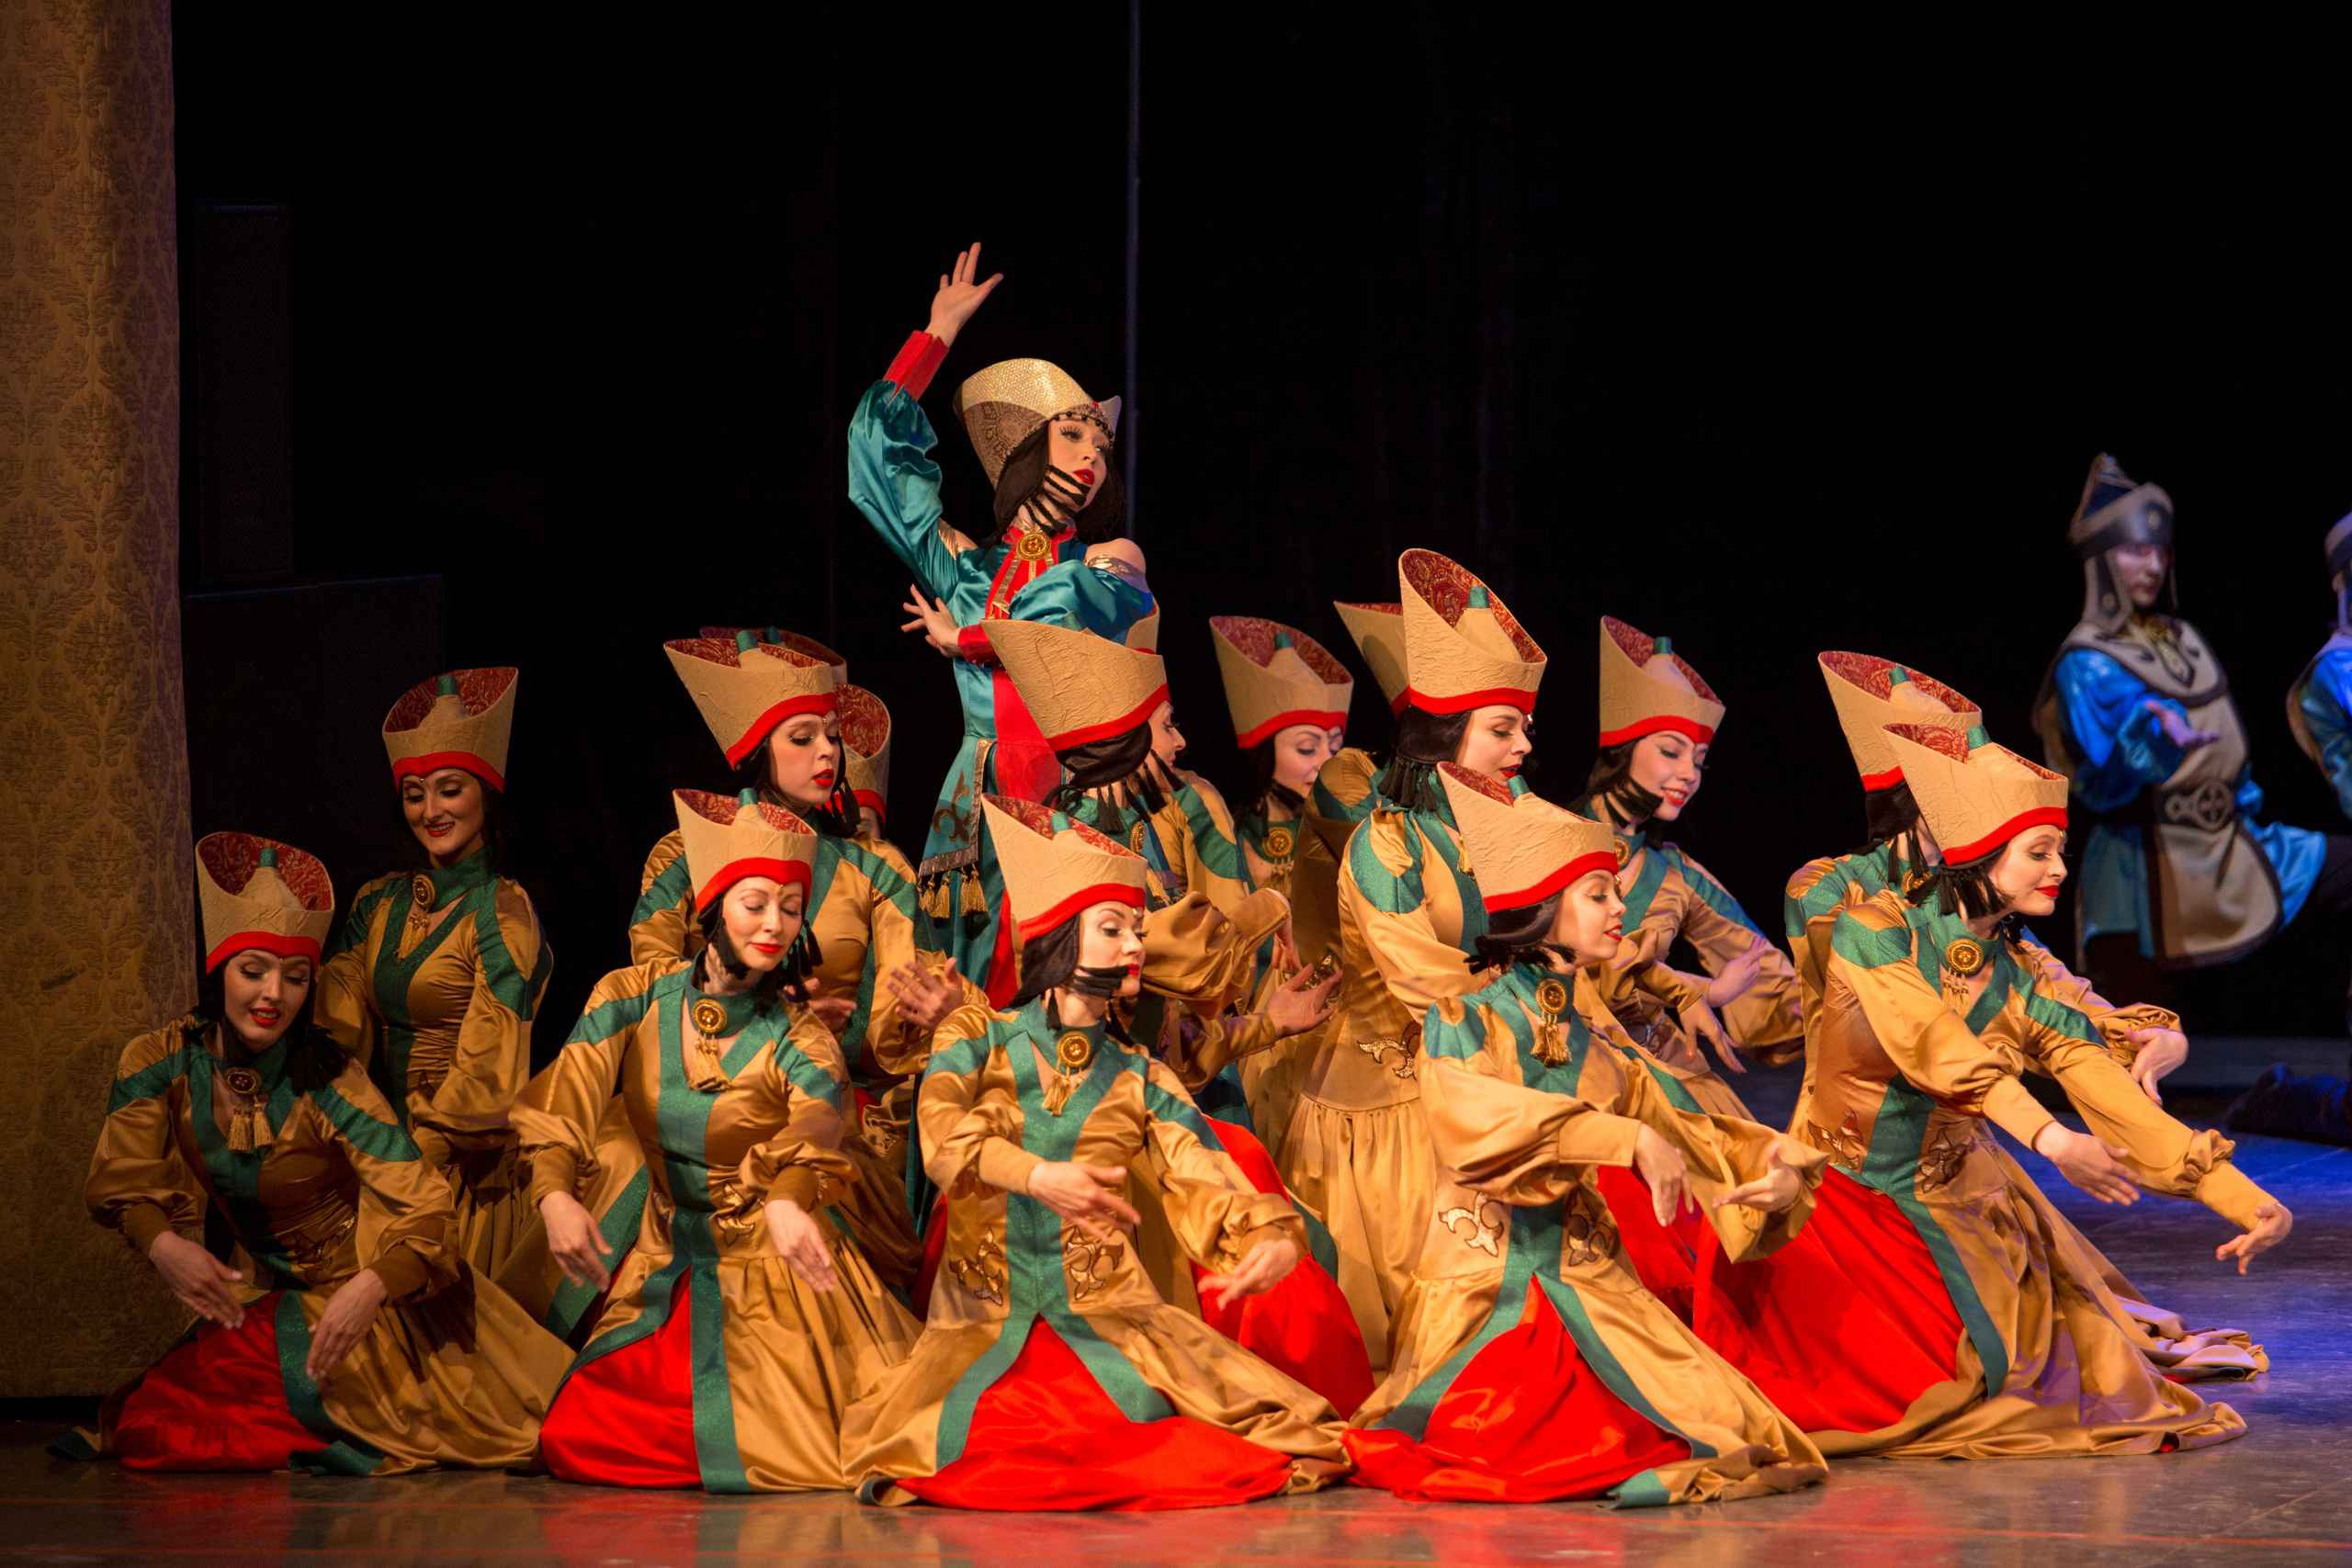 29 марта на сцене Дворца «Губернаторский» выступил один из лучших хореографических коллективов страны – легендарный ансамбль песни и танца Сибири имени Михаила Годенко.